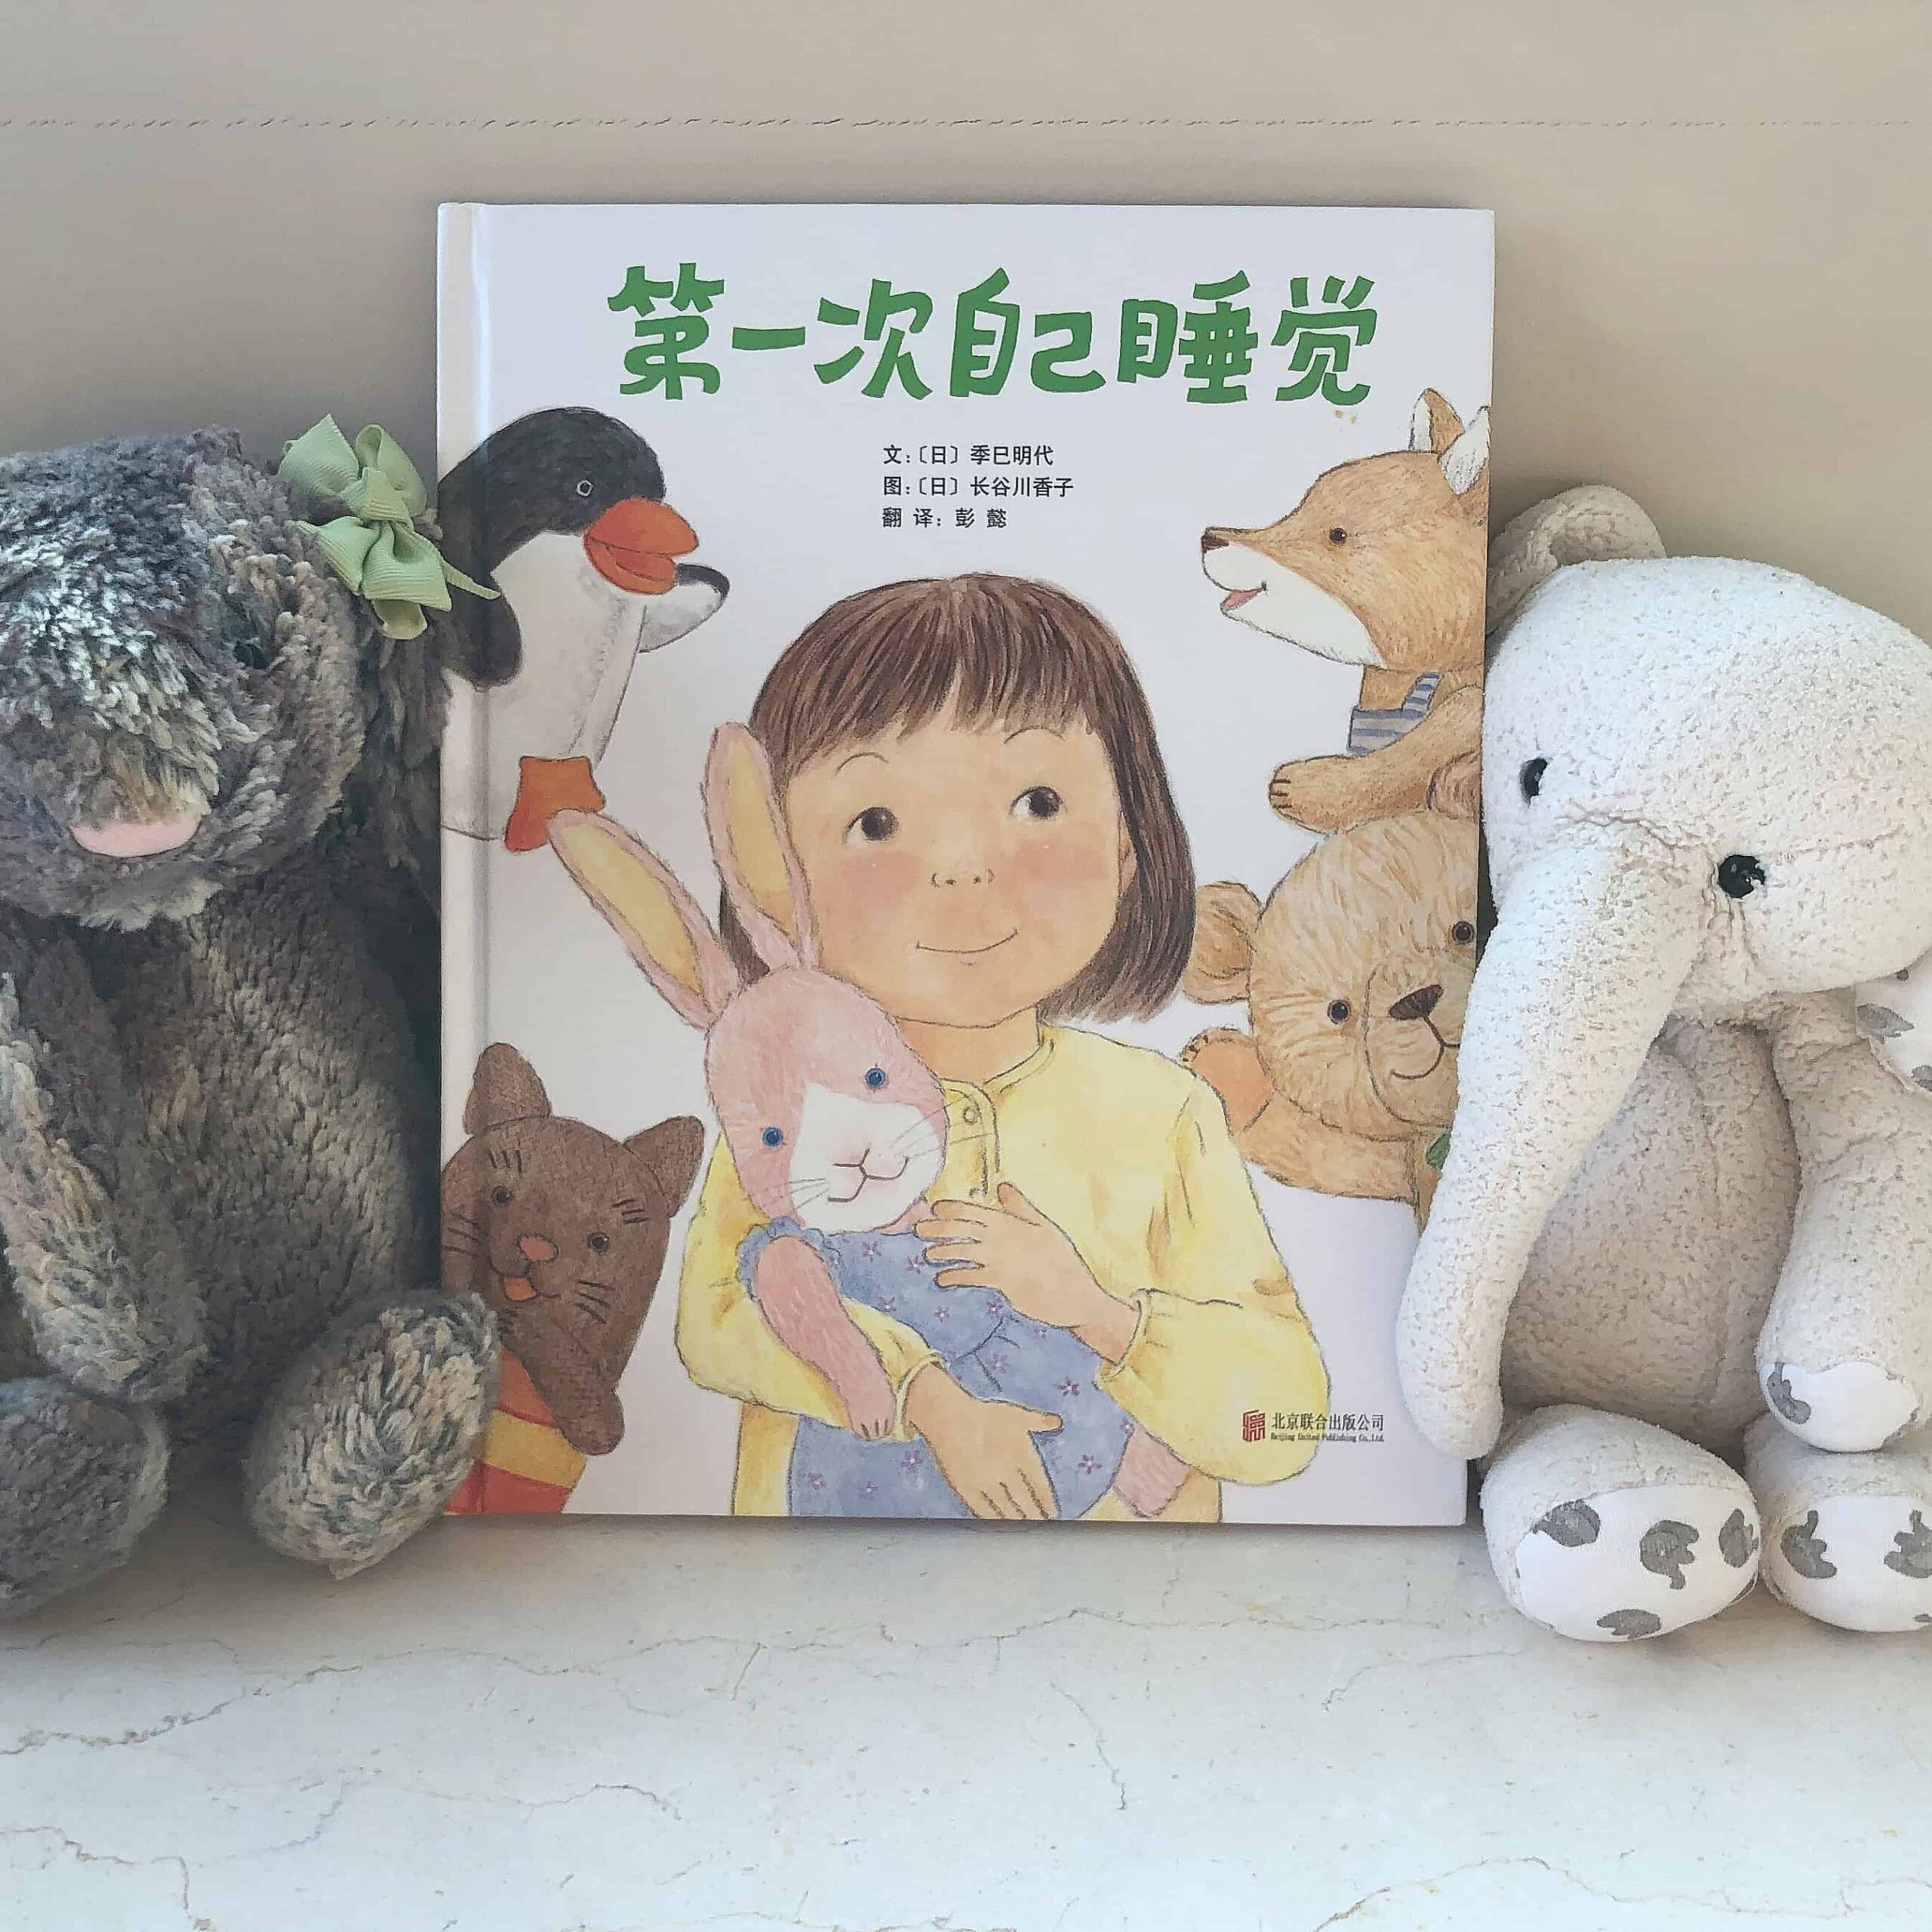 第一次自己睡觉 Chinese Children’s Book Review & Book-Based Activity!